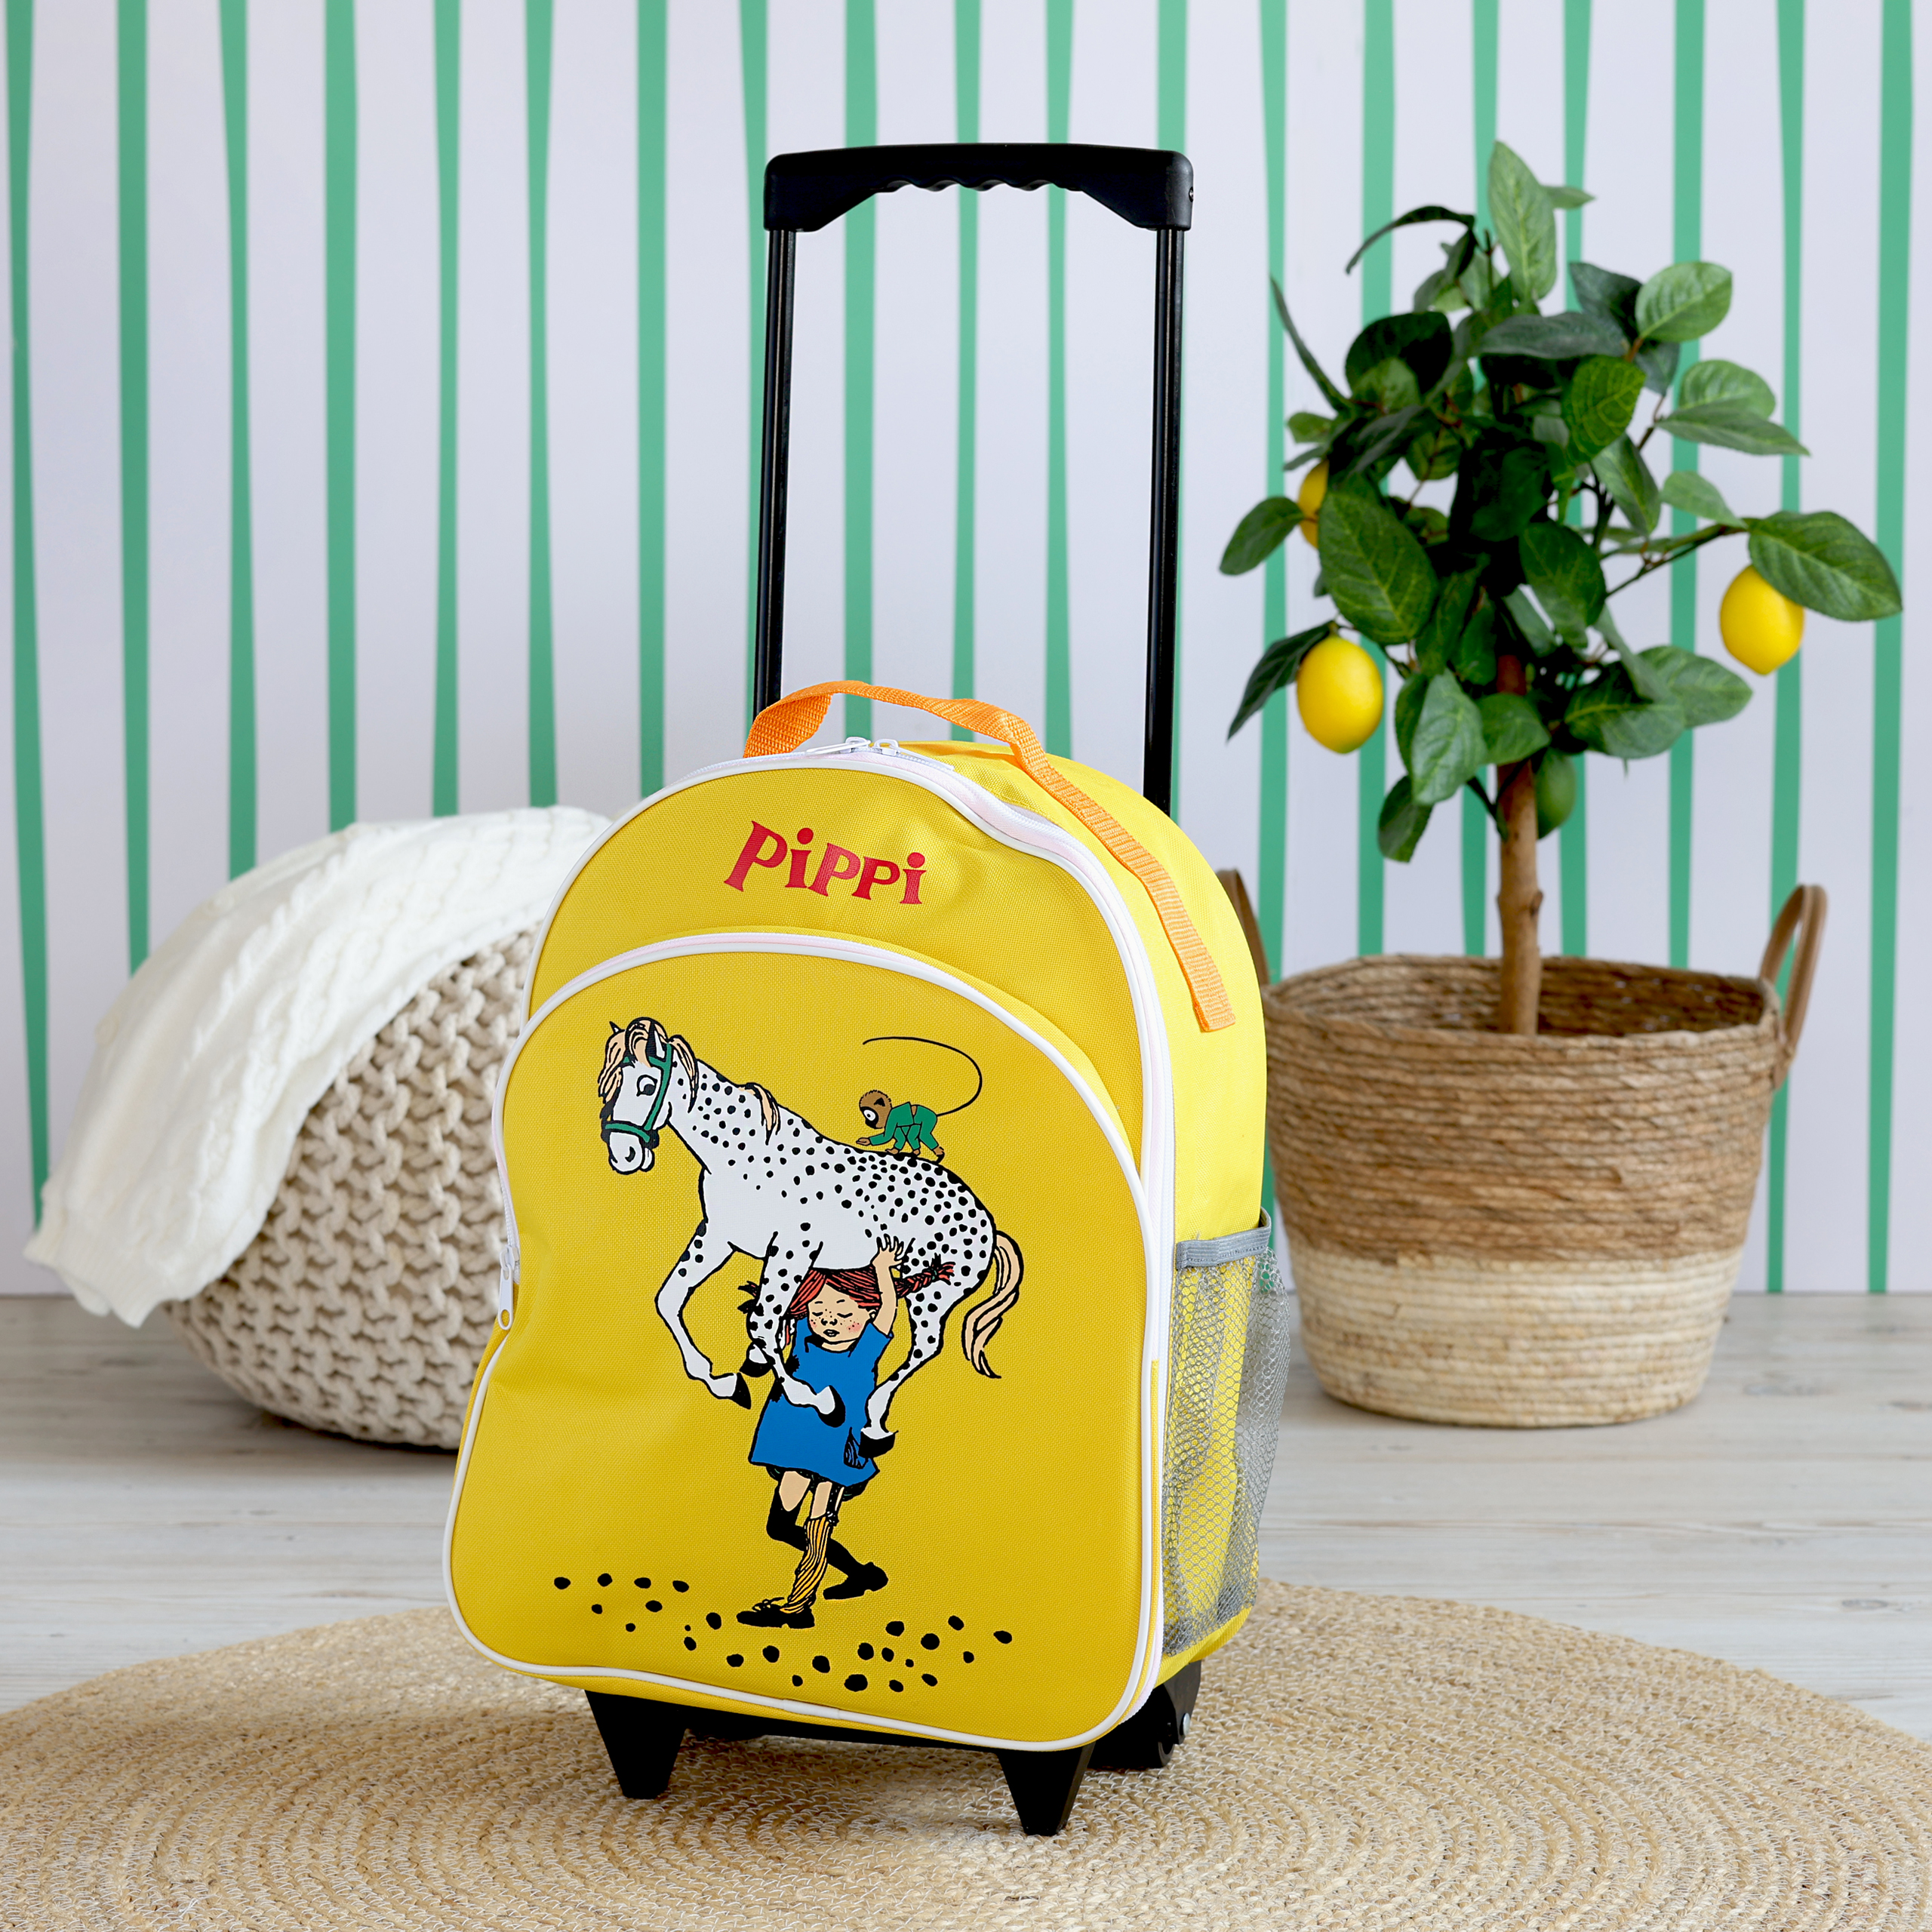 Pippi pippi børnetaske kuffert gul